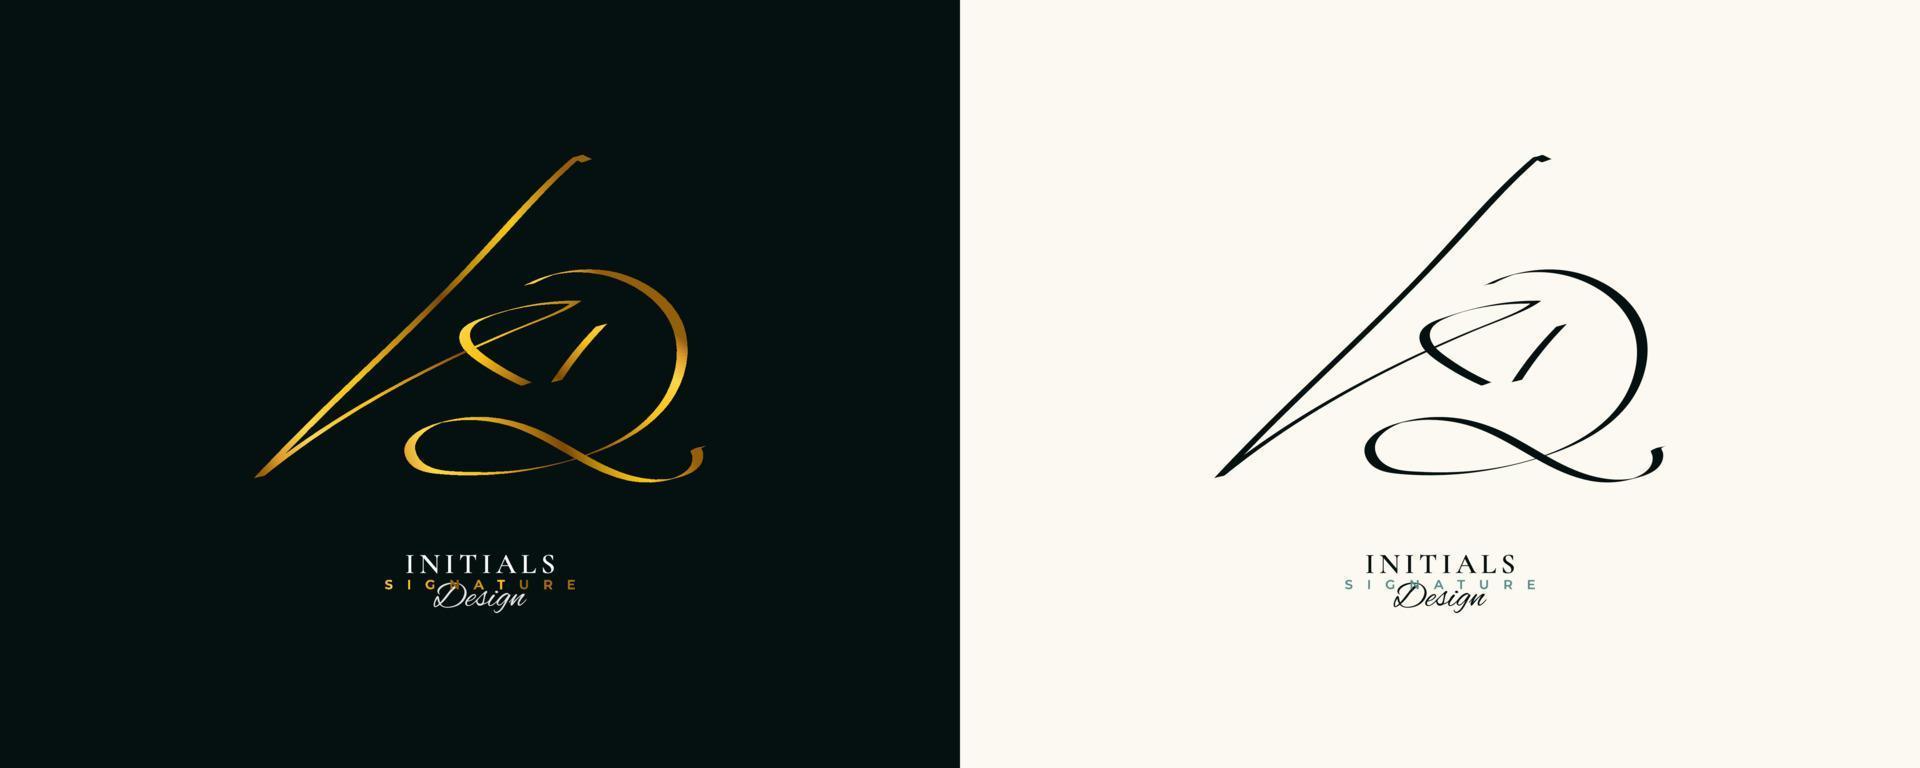 diseño del logotipo de la firma inicial kd con un estilo de escritura dorado elegante y minimalista. diseño inicial del logotipo k y d para bodas, moda, joyería, boutique e identidad de marca comercial vector